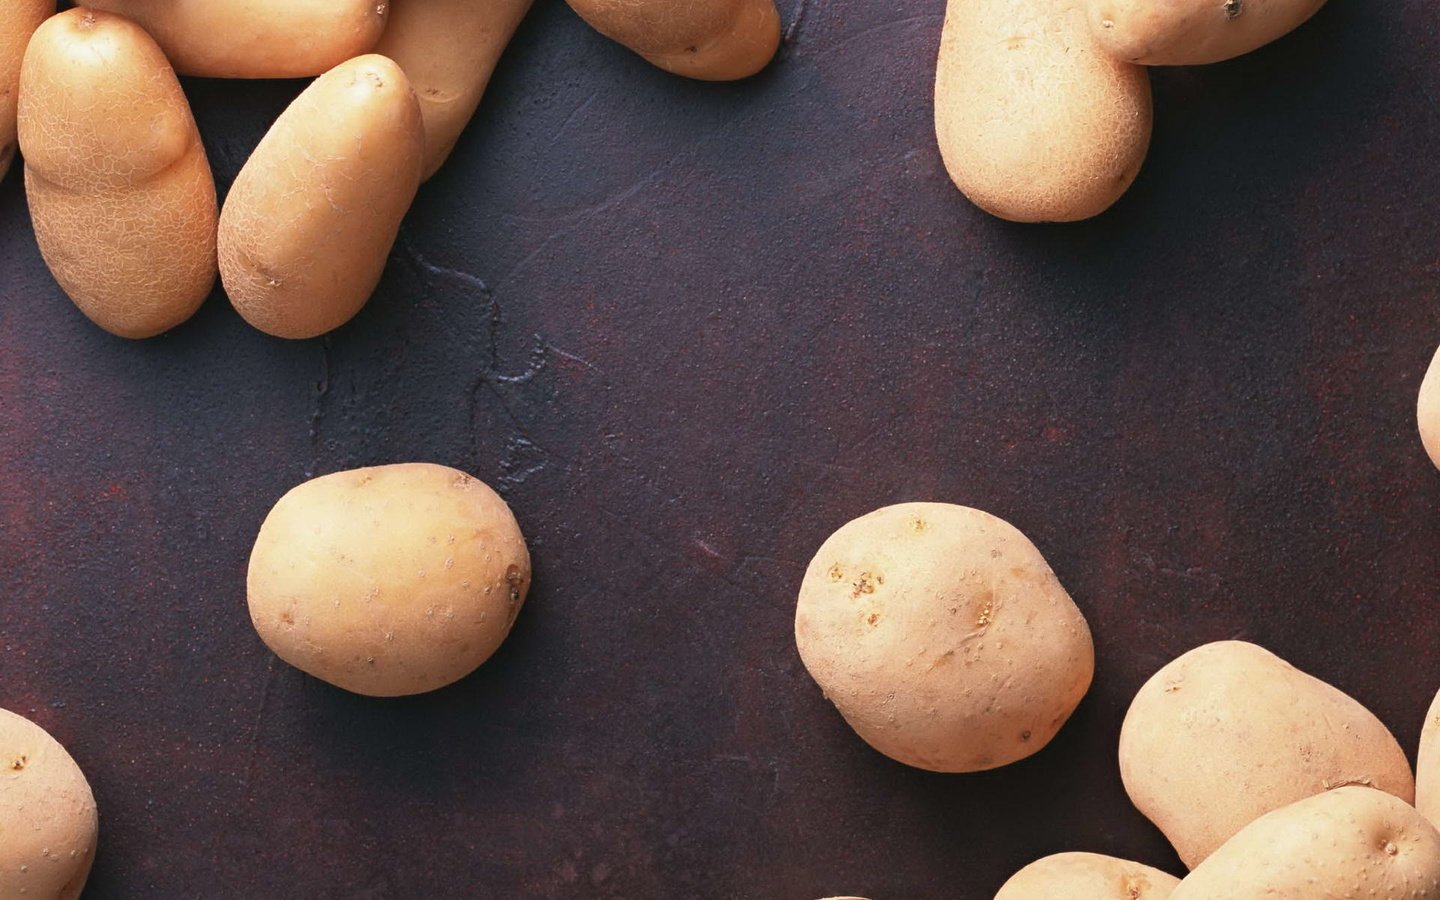 выберите фотографию где изображены плоды картофеля